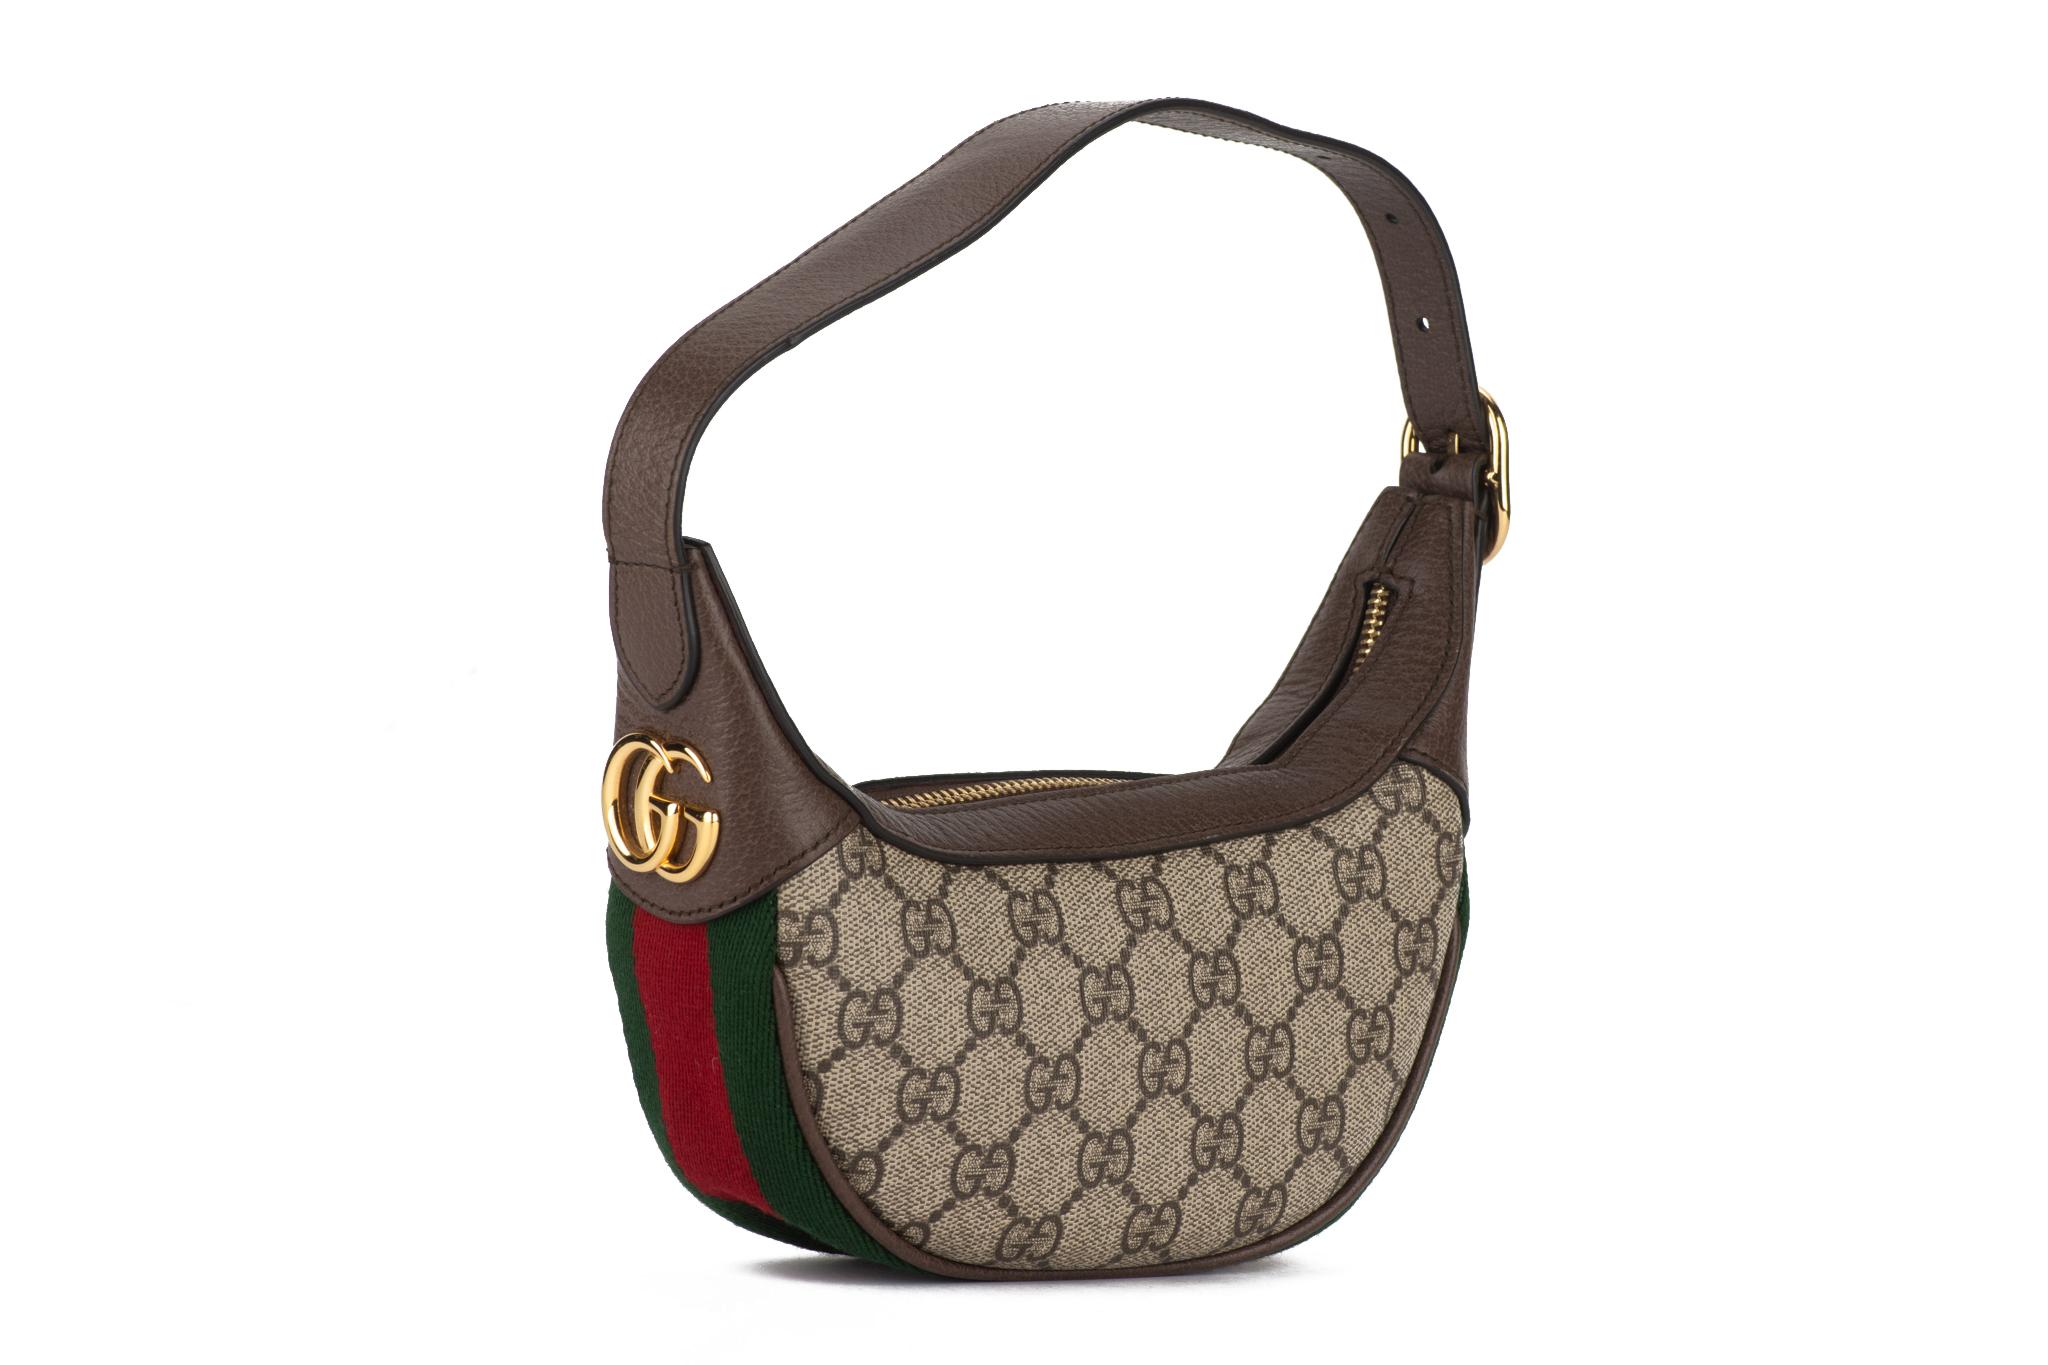 Gucci mini Ophidia Halbmond-Tasche mit klassischem GG Canvas-Druck, braunem Lederbesatz und goldfarbener Hardware. Perfektes Äußeres, minimale Abnutzung im Inneren. 
Verstellbarer Schultergurt mit einer Tiefe von 6